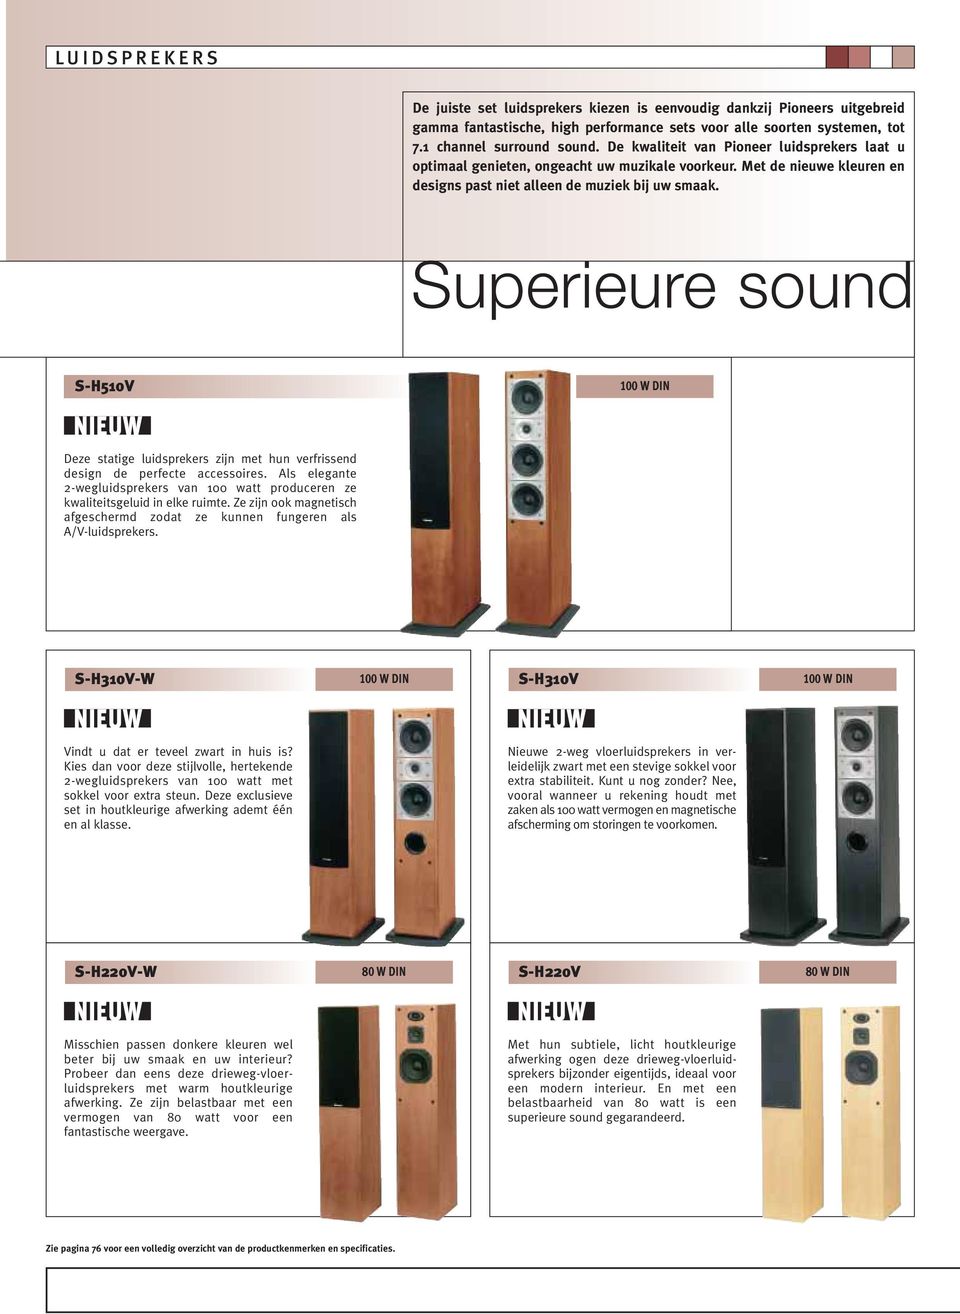 Superieure sound S-H510V Deze statige luidsprekers zijn met hun verfrissend design de perfecte accessoires. Als elegante 2-wegluidsprekers van 100 watt produceren ze kwaliteitsgeluid in elke ruimte.